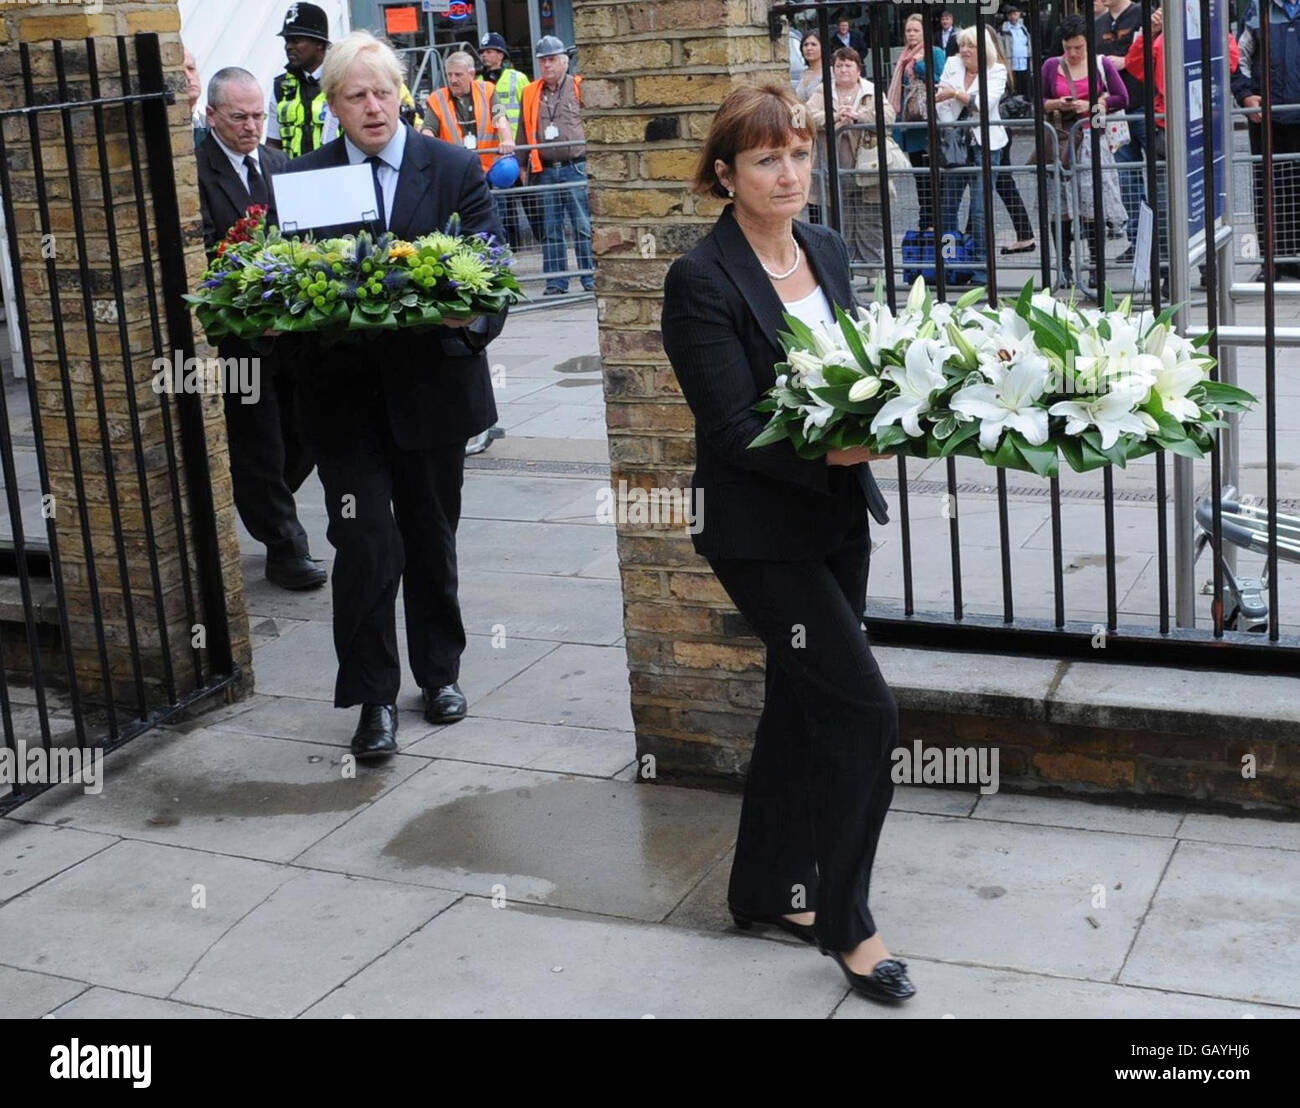 Der Londoner Bürgermeister Boris Johnson und die für humanitäre Hilfe zuständige Ministerin Tessa Jowell legen anlässlich des dritten Jahrestages der Bombenanschläge vom 7. Juli auf die Londoner U-Bahn Blumen an der Kings Cross Station in London. Stockfoto